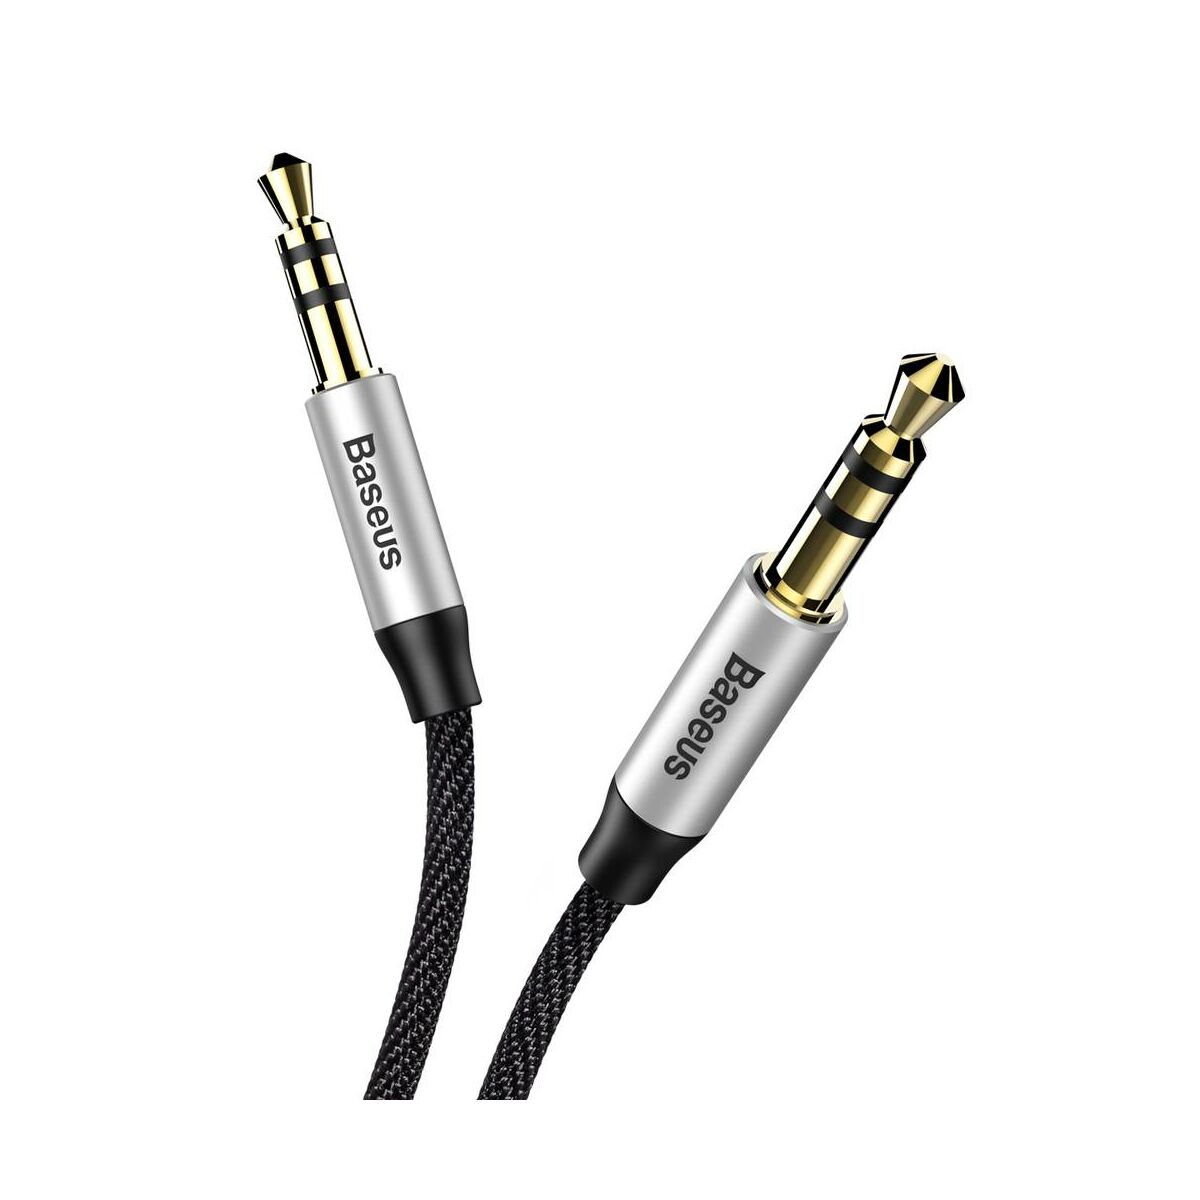 Kép 6/9 - Baseus Audio kábel, Yiven M30 AUX 1.5m, ezüst/fekete (CAM30-CS1)